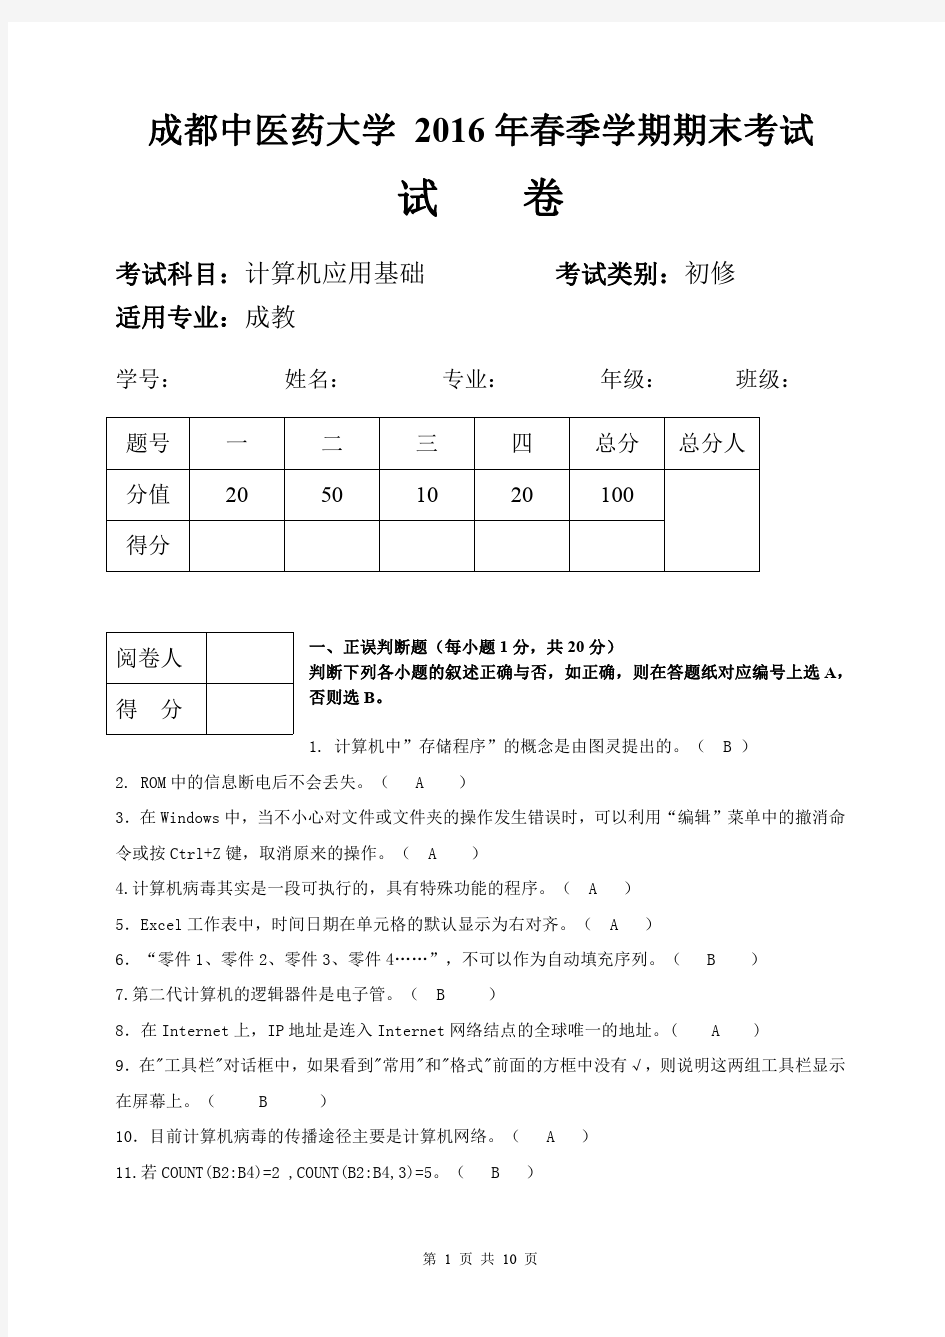 成都中医药大学 2016年春季学期期末考试计算机基础试卷-成教(答案)